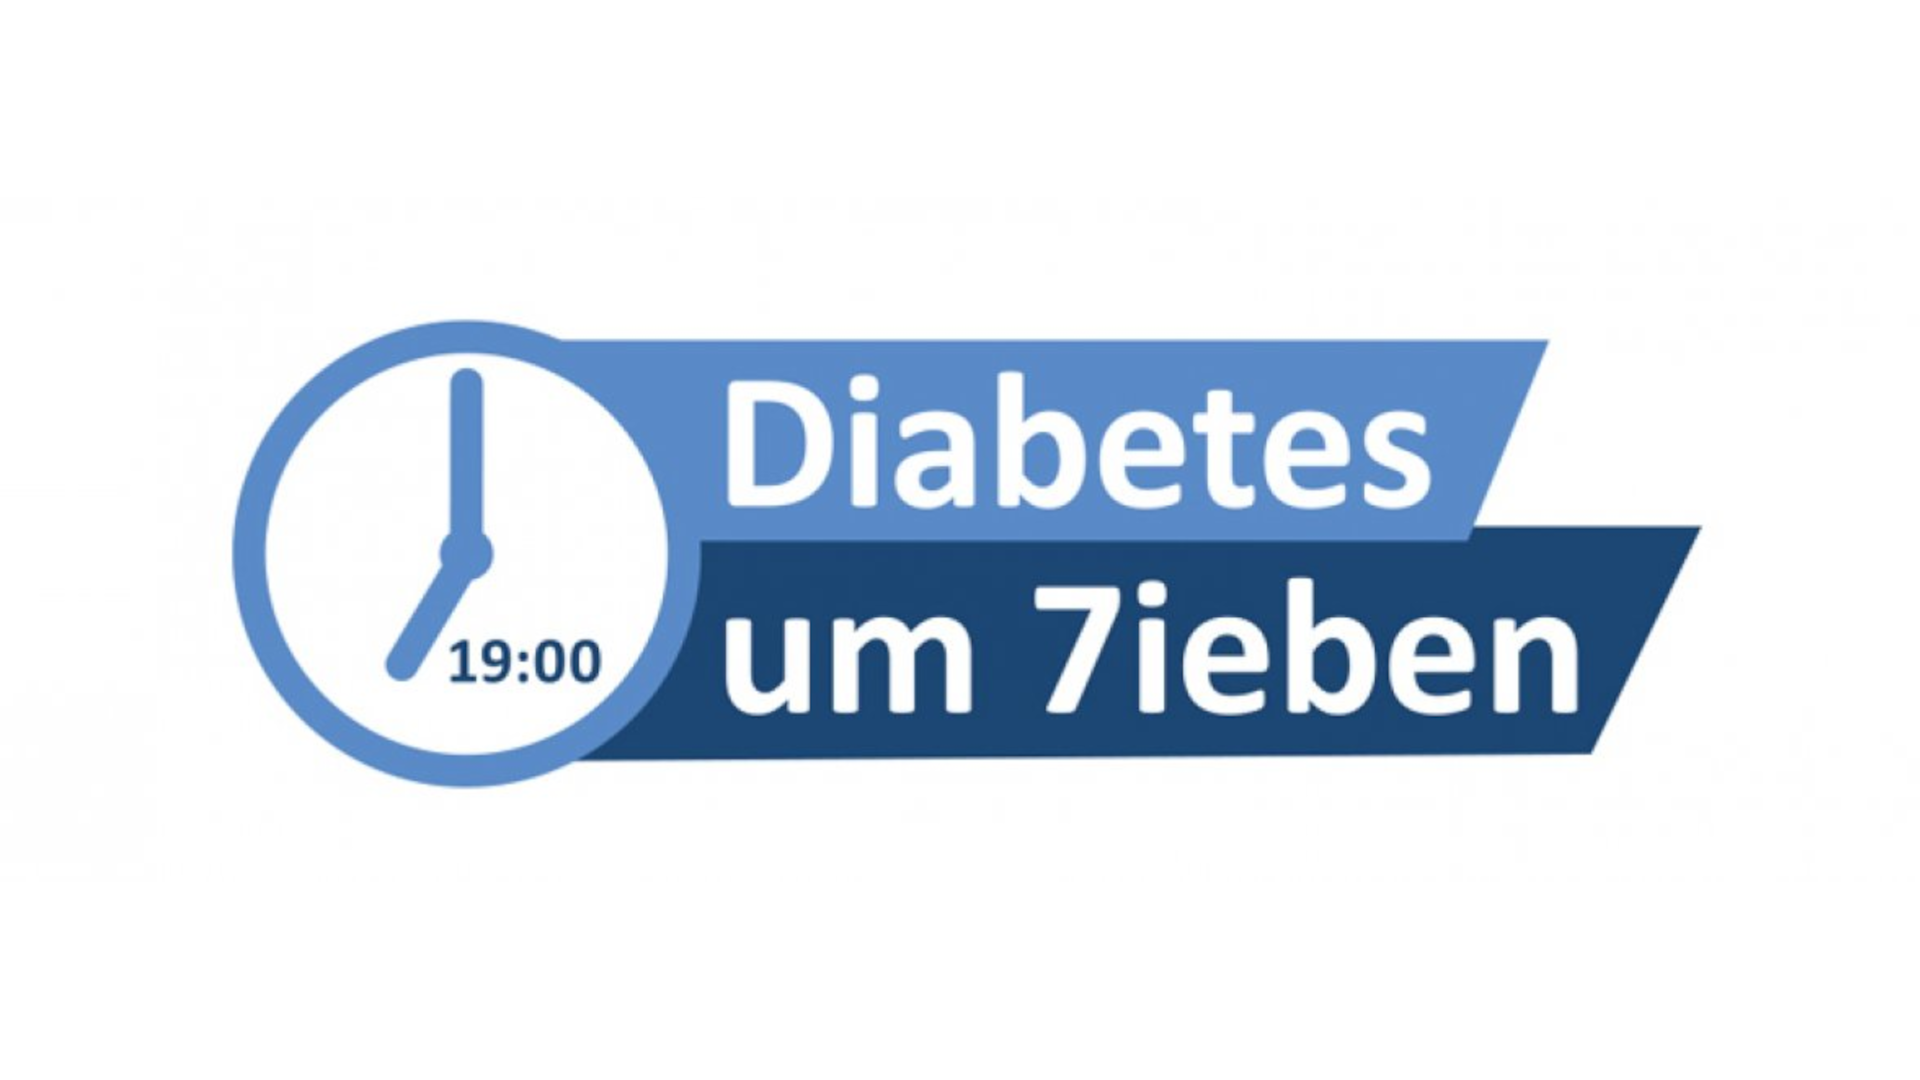 „Diabetes um 7ieben“ – Politiker im Fragenhagel